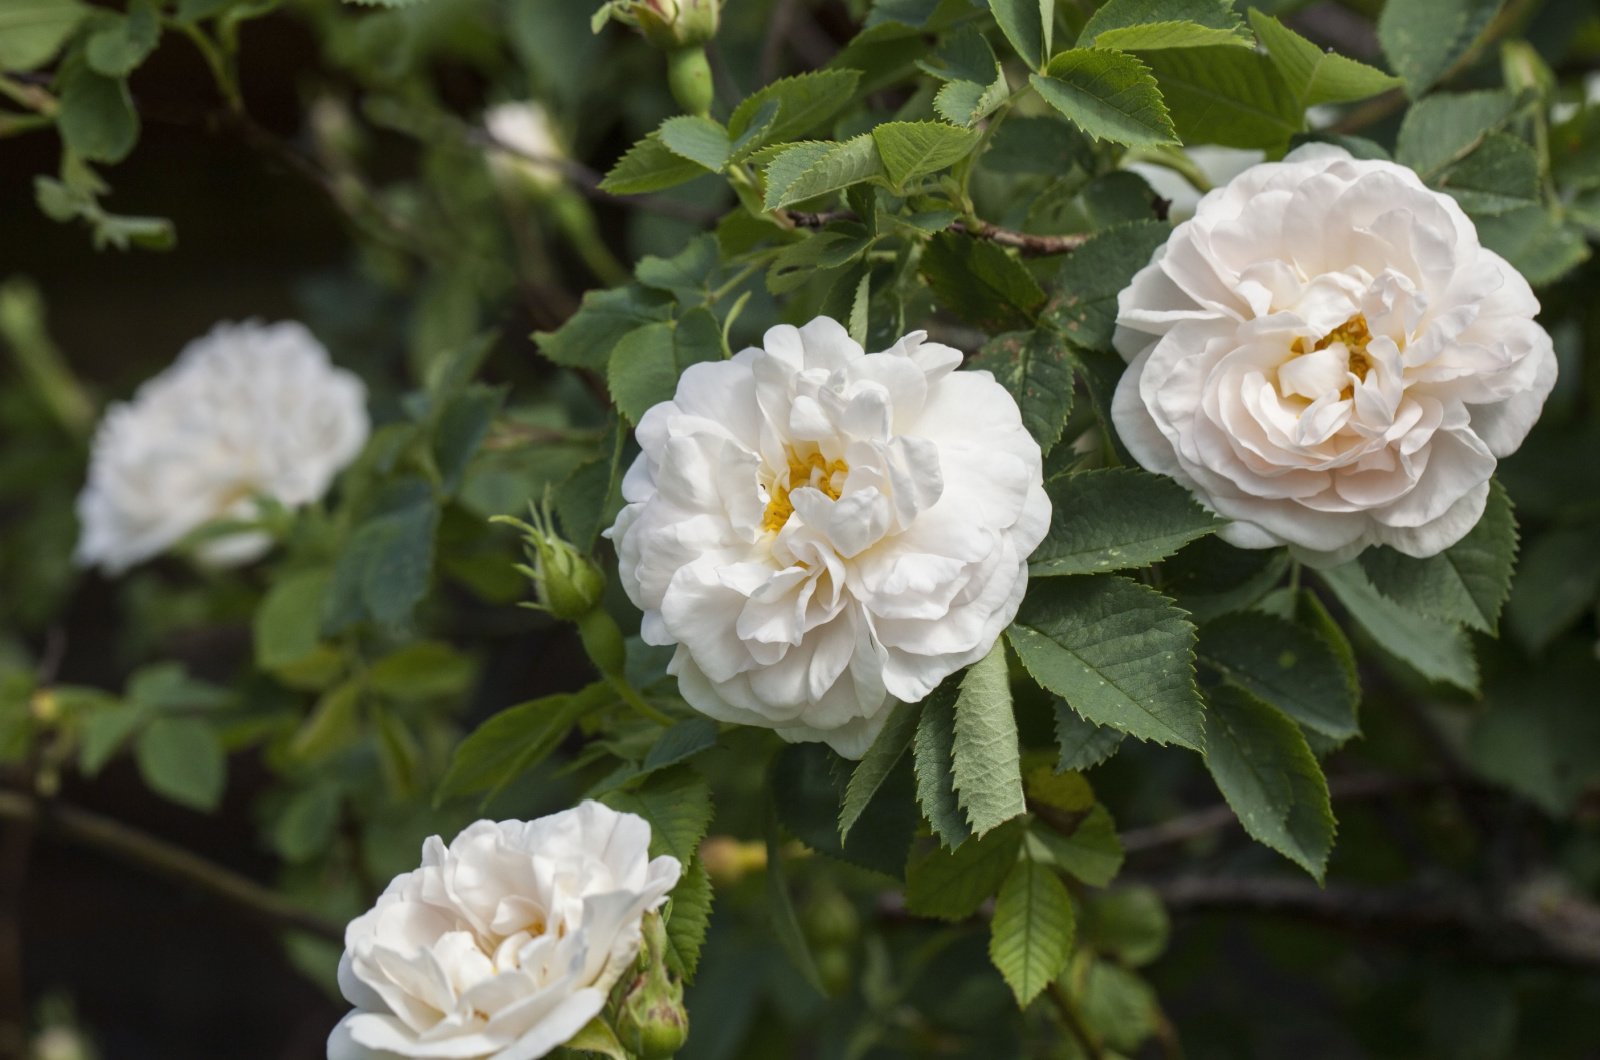 alba maxima rose blossom